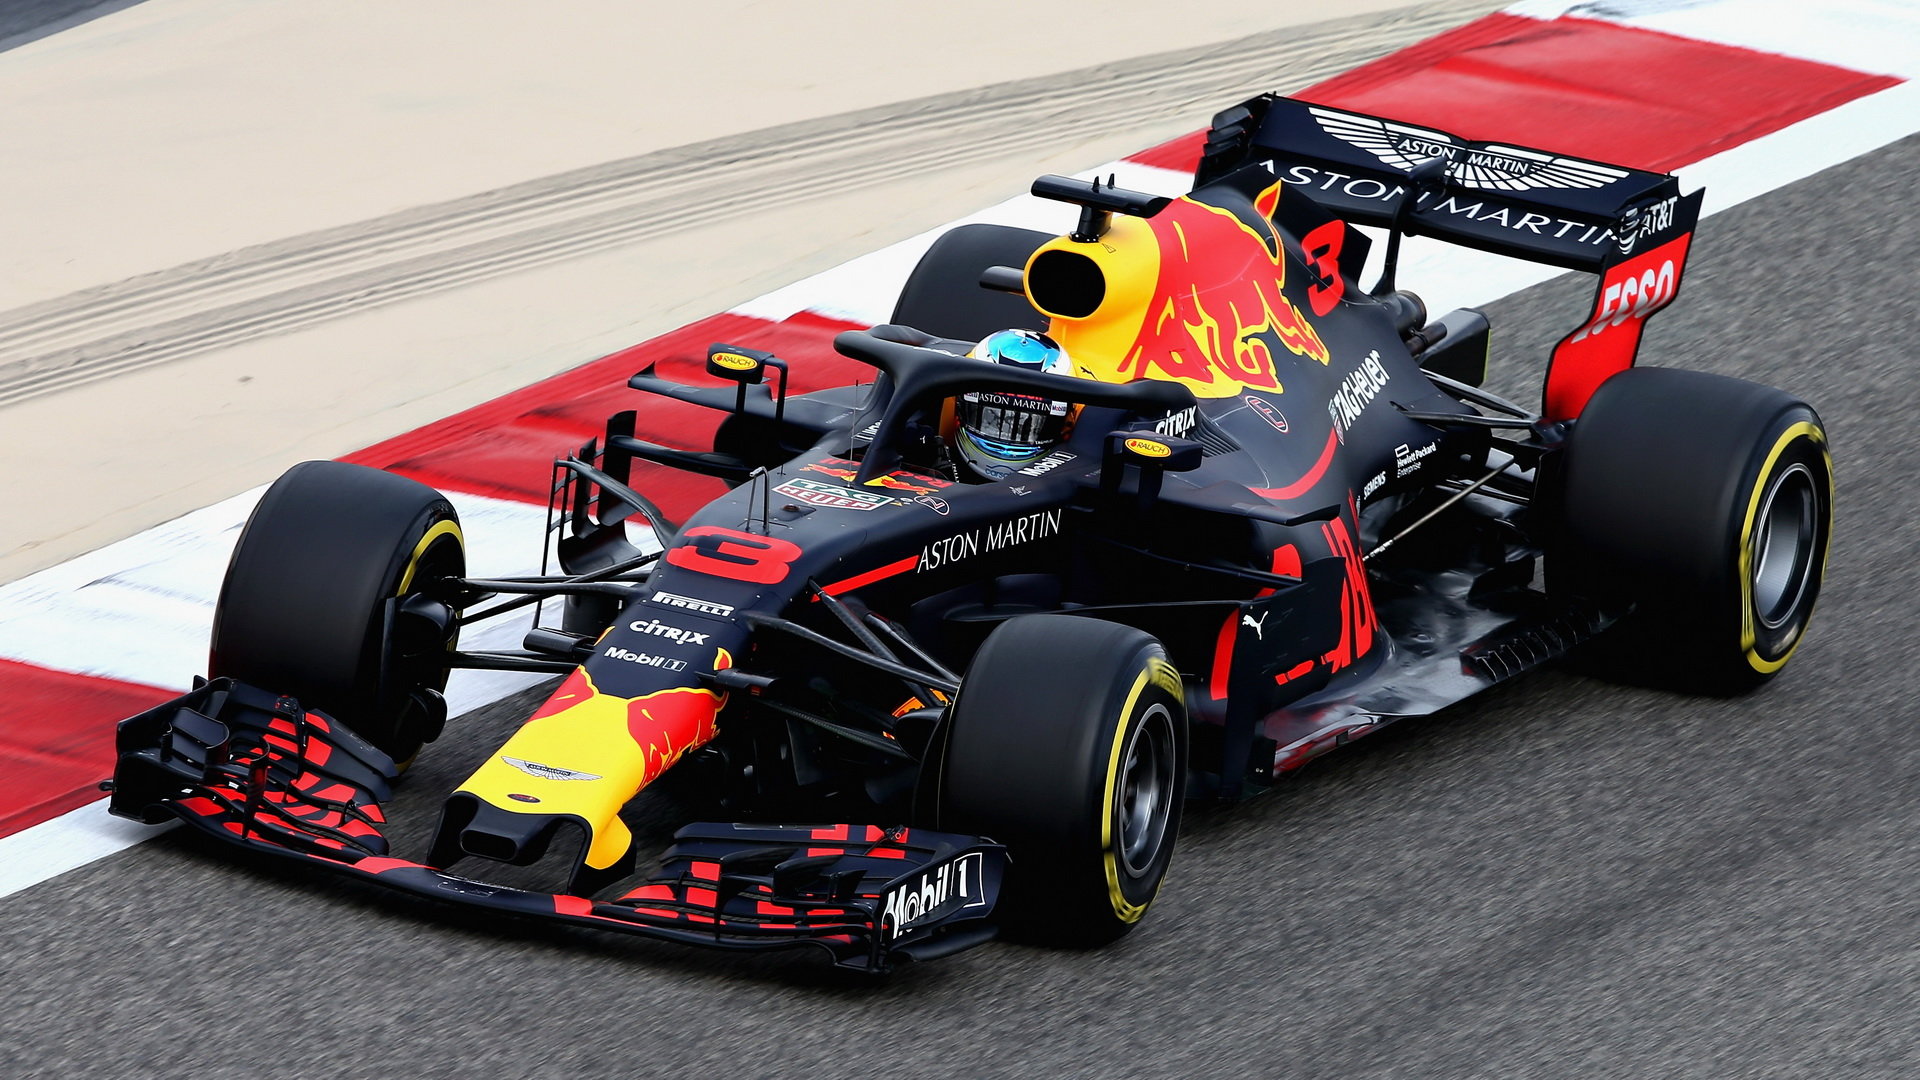 Dle Daniela Ricciarda se musí u Red Bullu ještě v určitých oblastech zlepšit